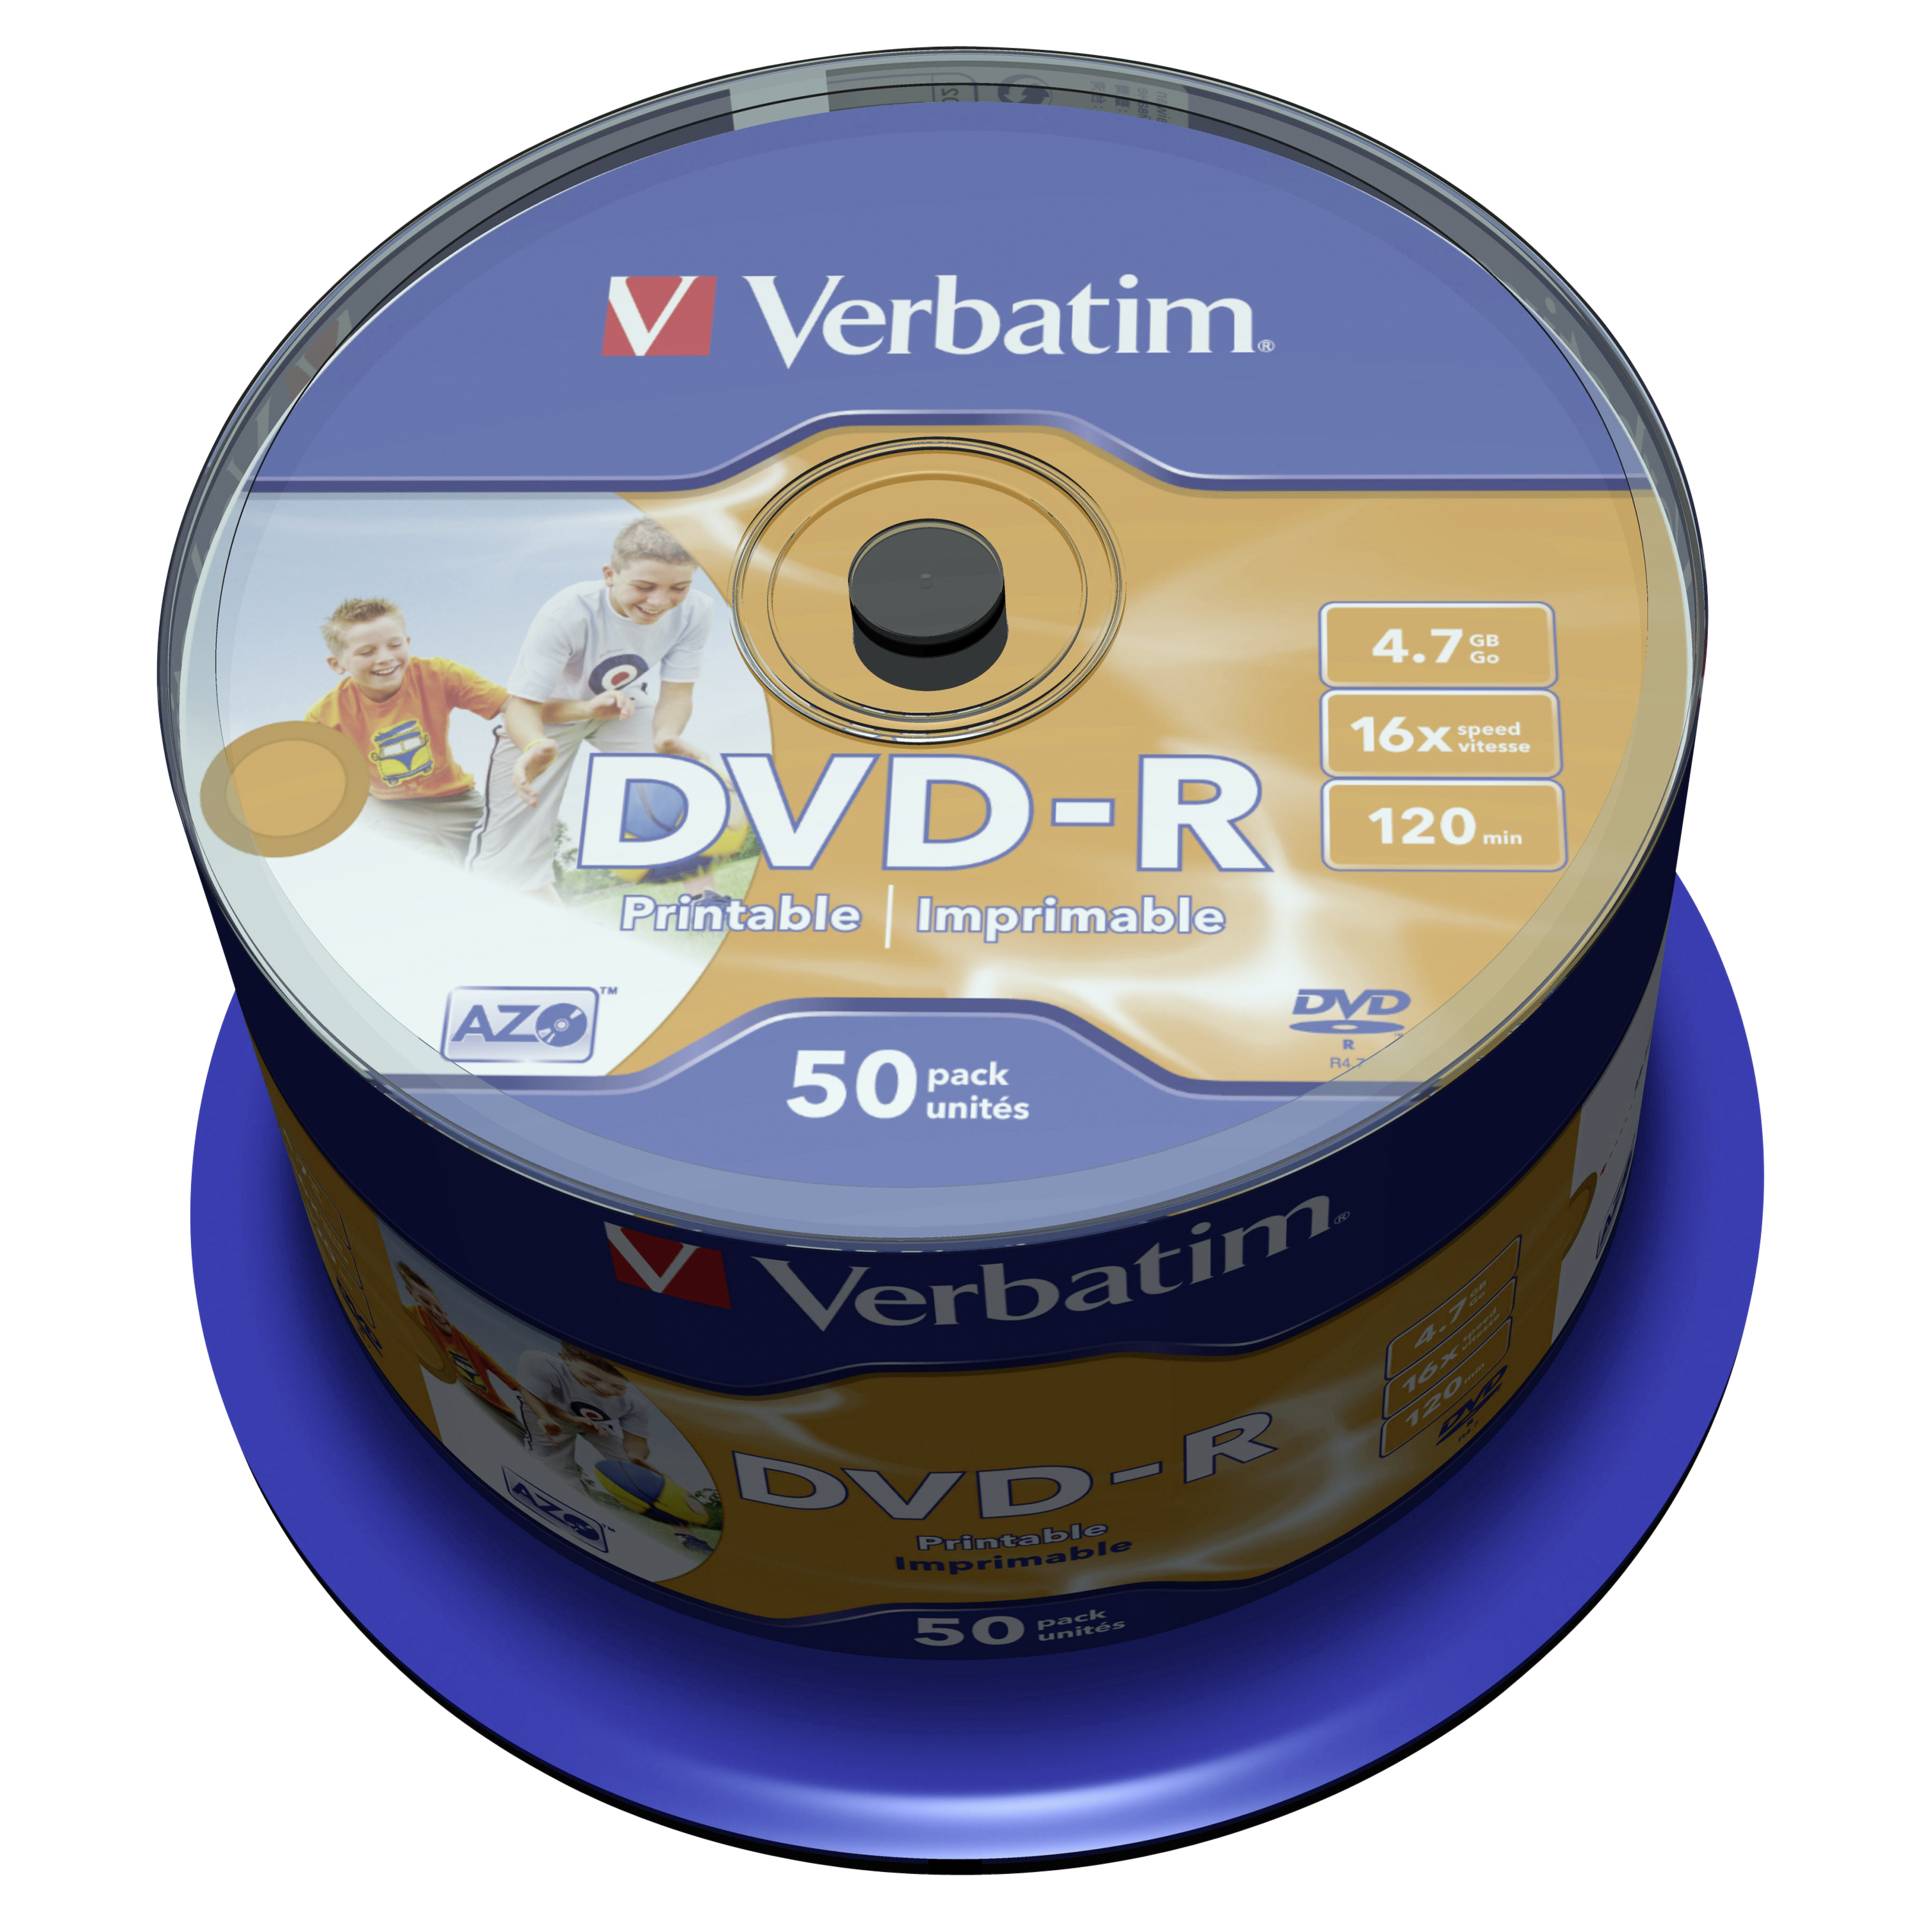 1x50 Verbatim DVD-R 4,7GB 16x Speed, foto  printable